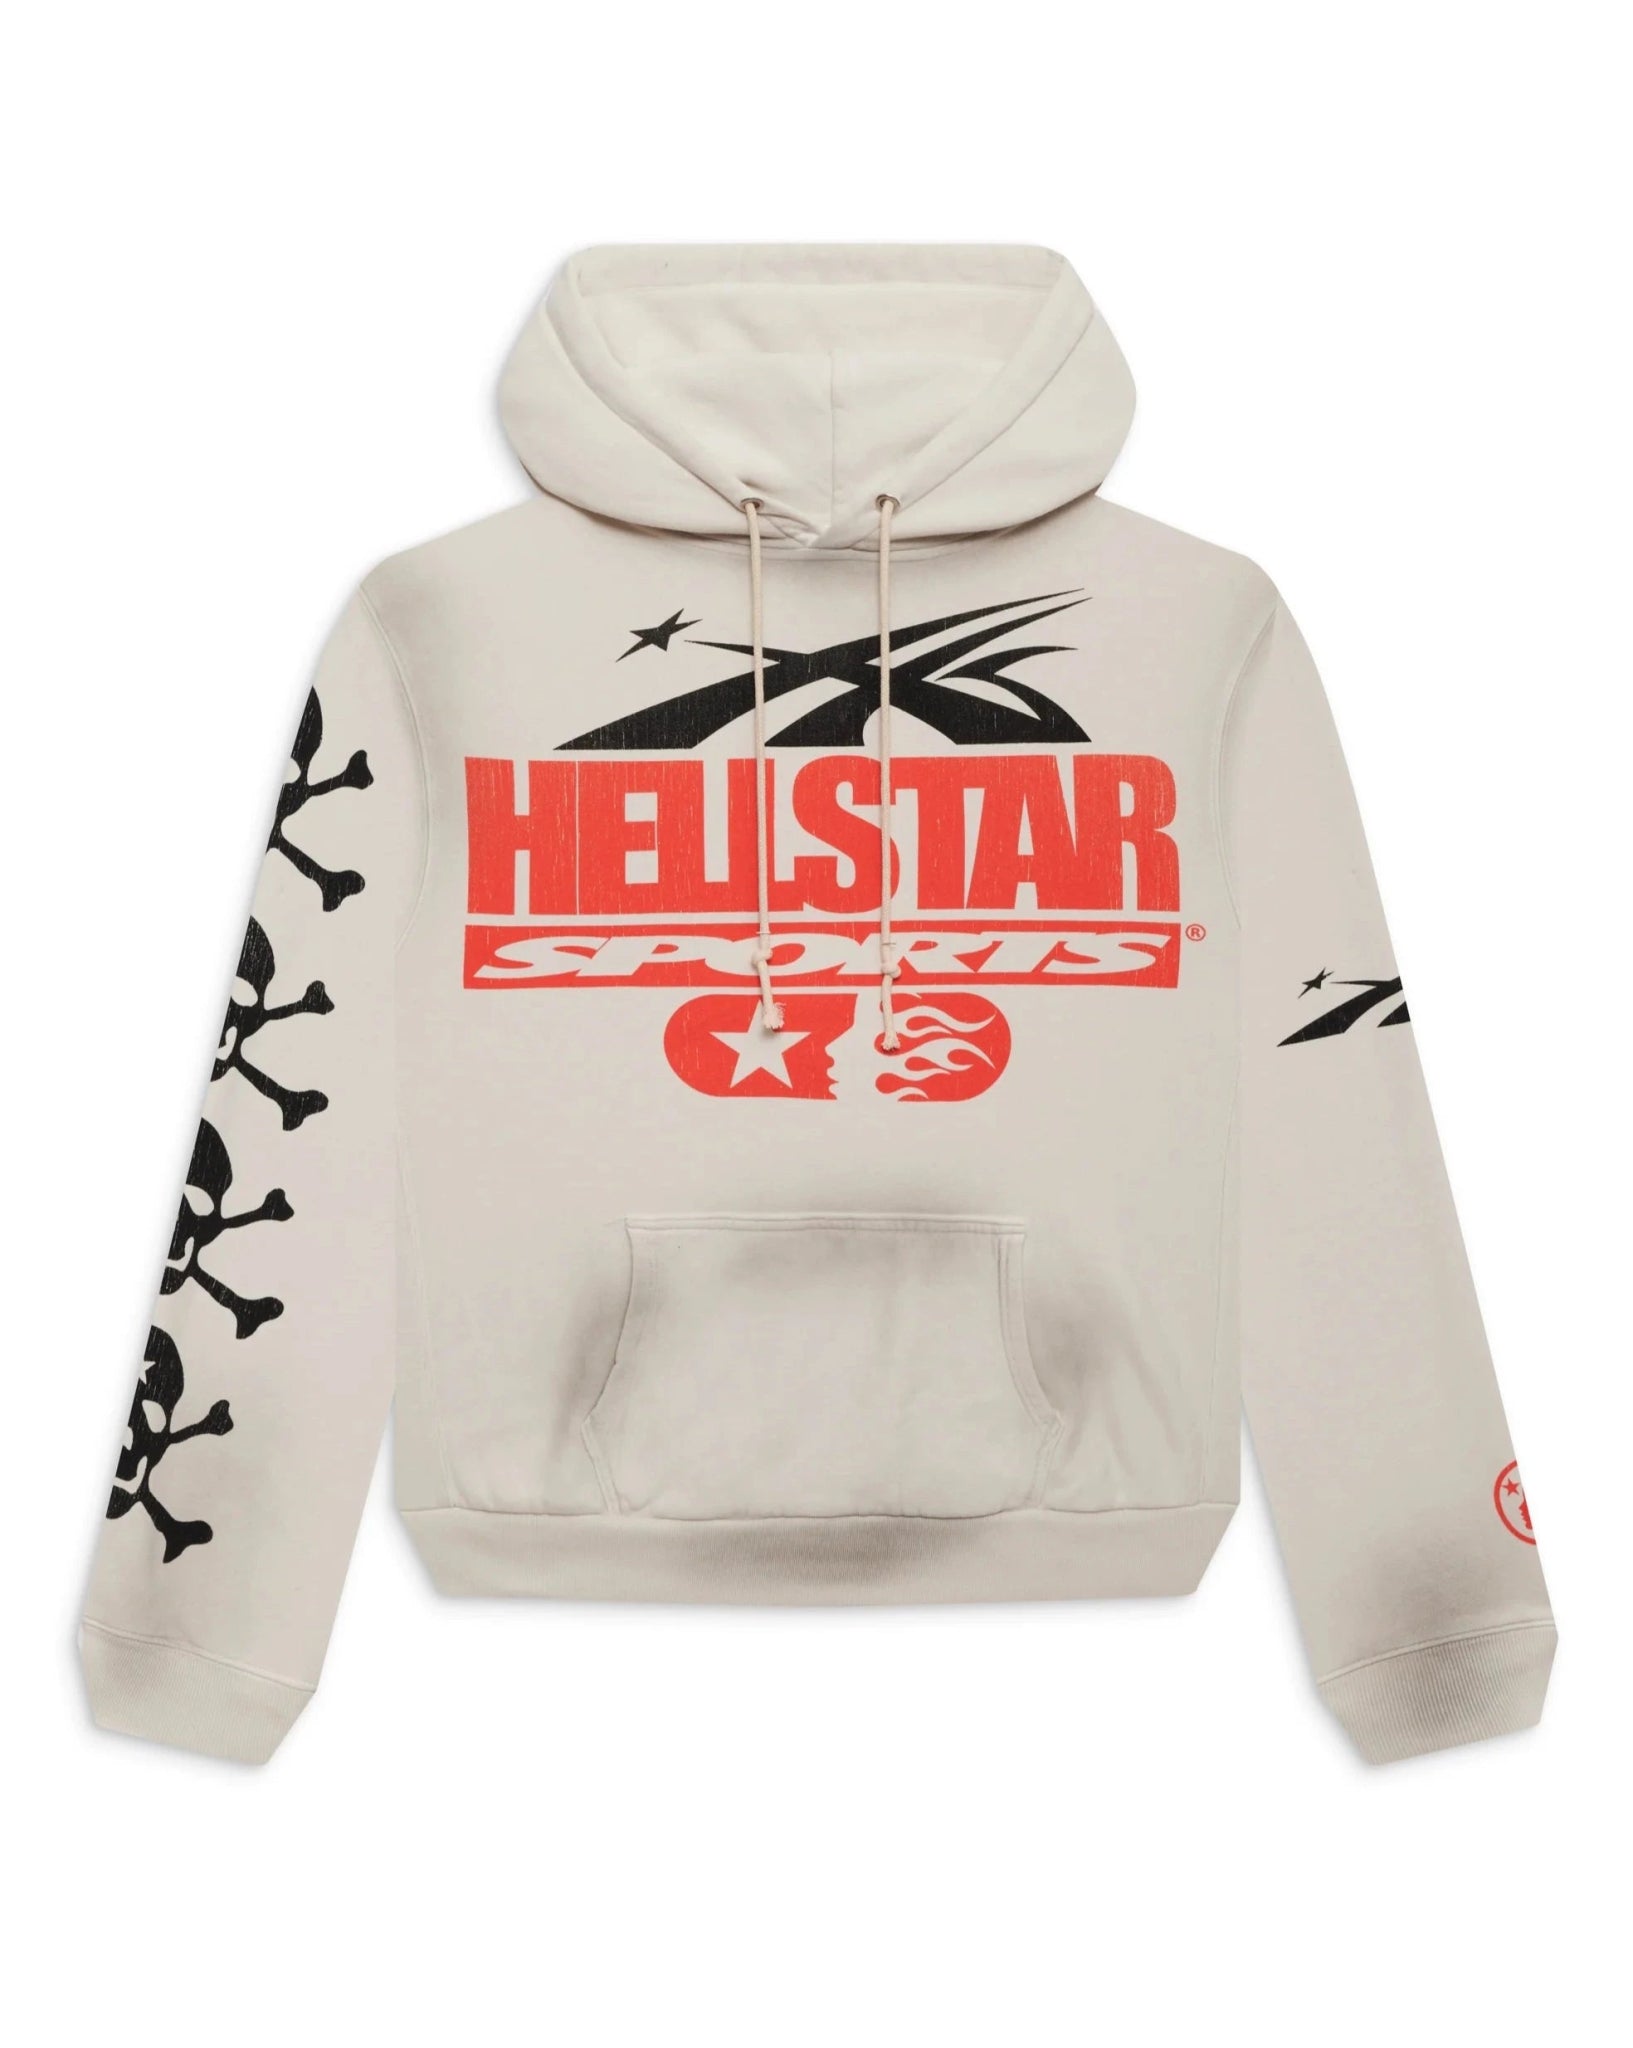 Hellstar Sports If You Dont Like Us Beat Us Hoodie - Paroissesaintefoy Sneakers Sale Online